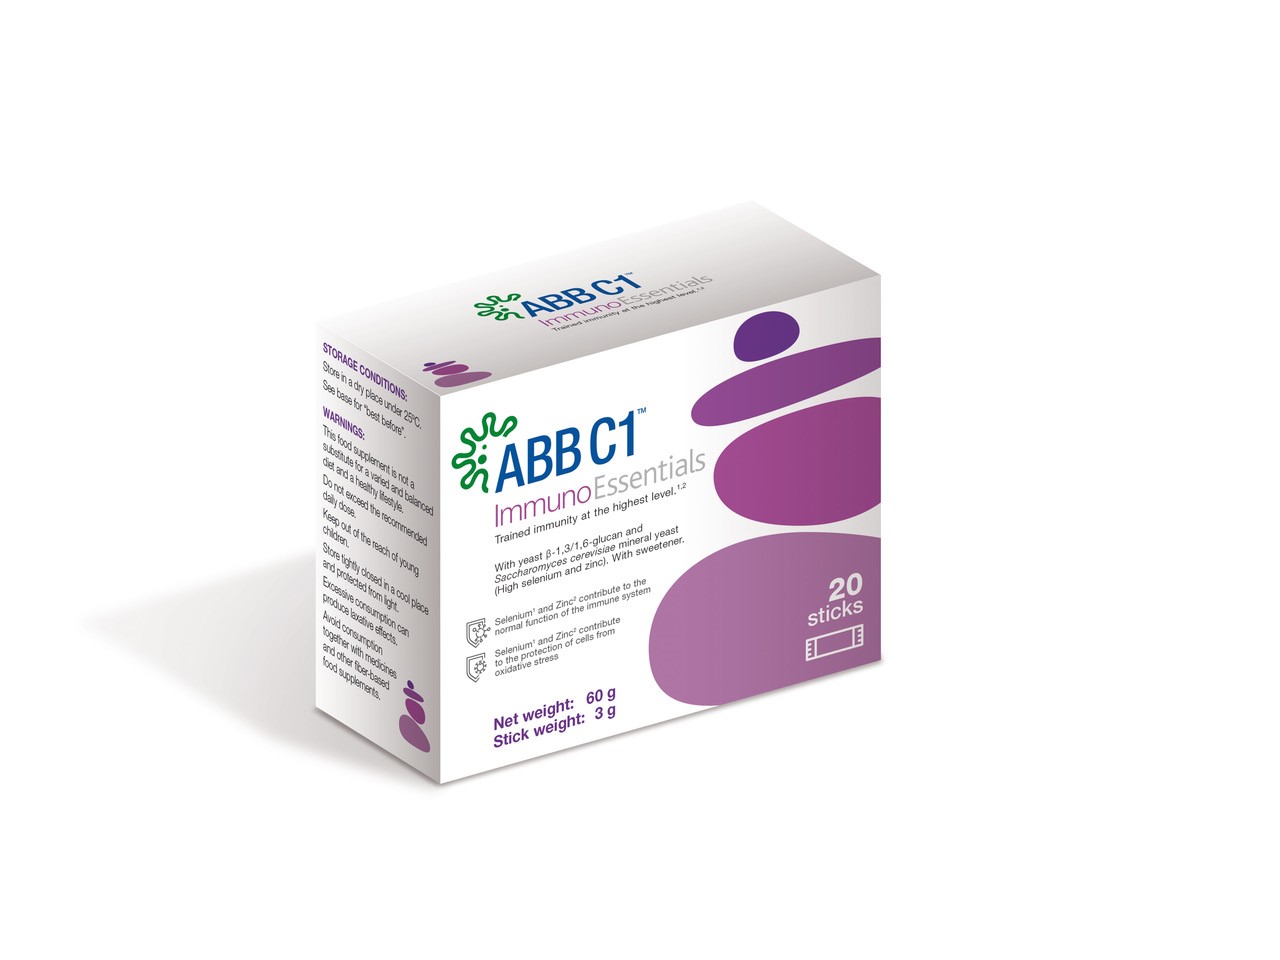 AB Biotek launches ABB C1 ImmunoEssentials